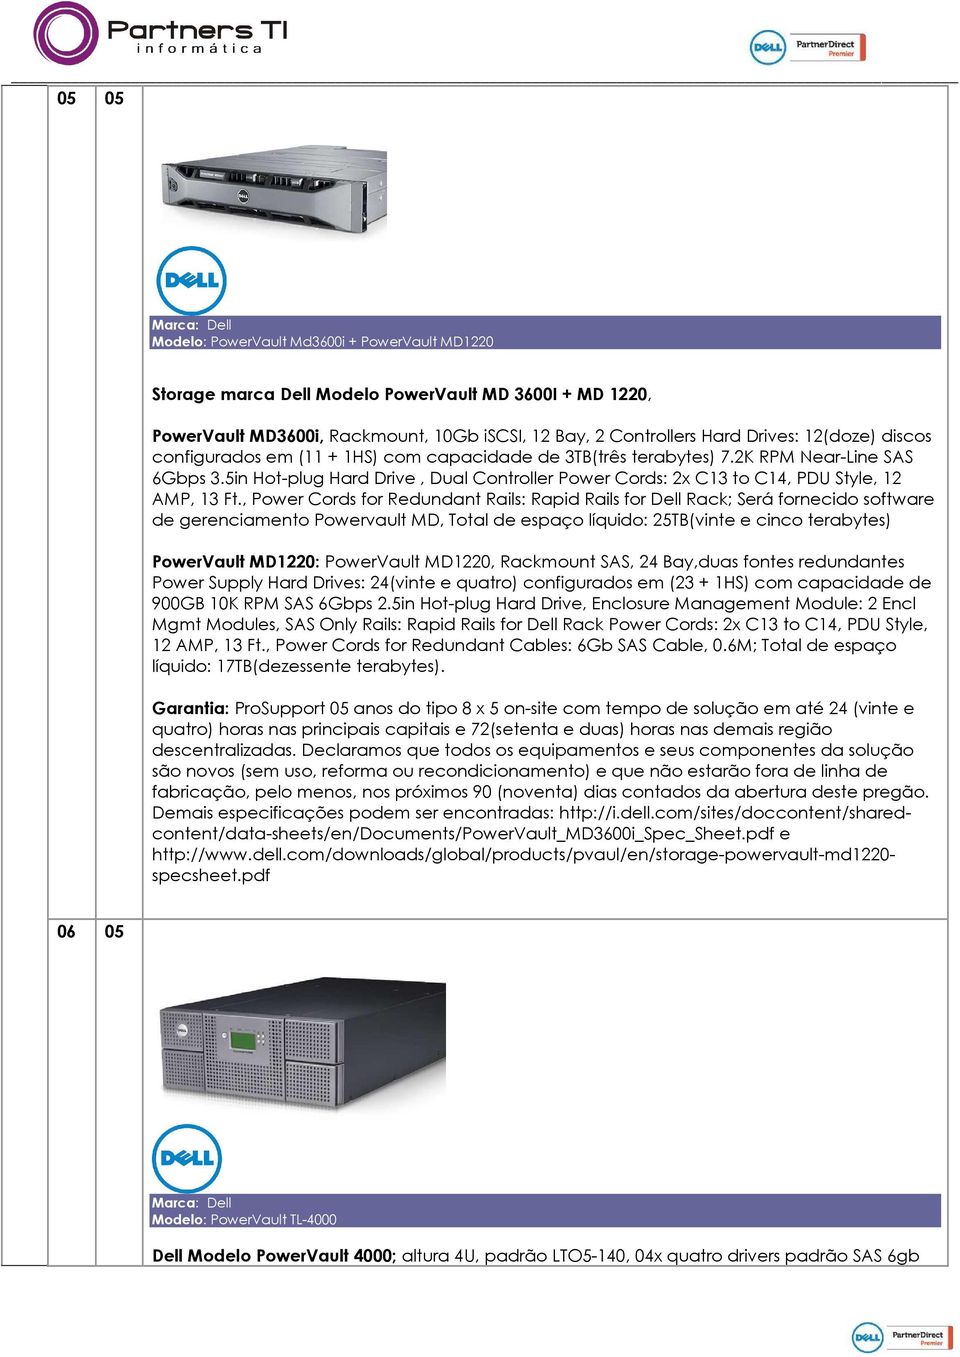 , Power Cords for Redundant Rails: Rapid Rails for Dell Rack; Será fornecido software de gerenciamento Powervault MD, Total de espaço líquido: 25TB(vinte e cinco terabytes) PowerVault MD1220: